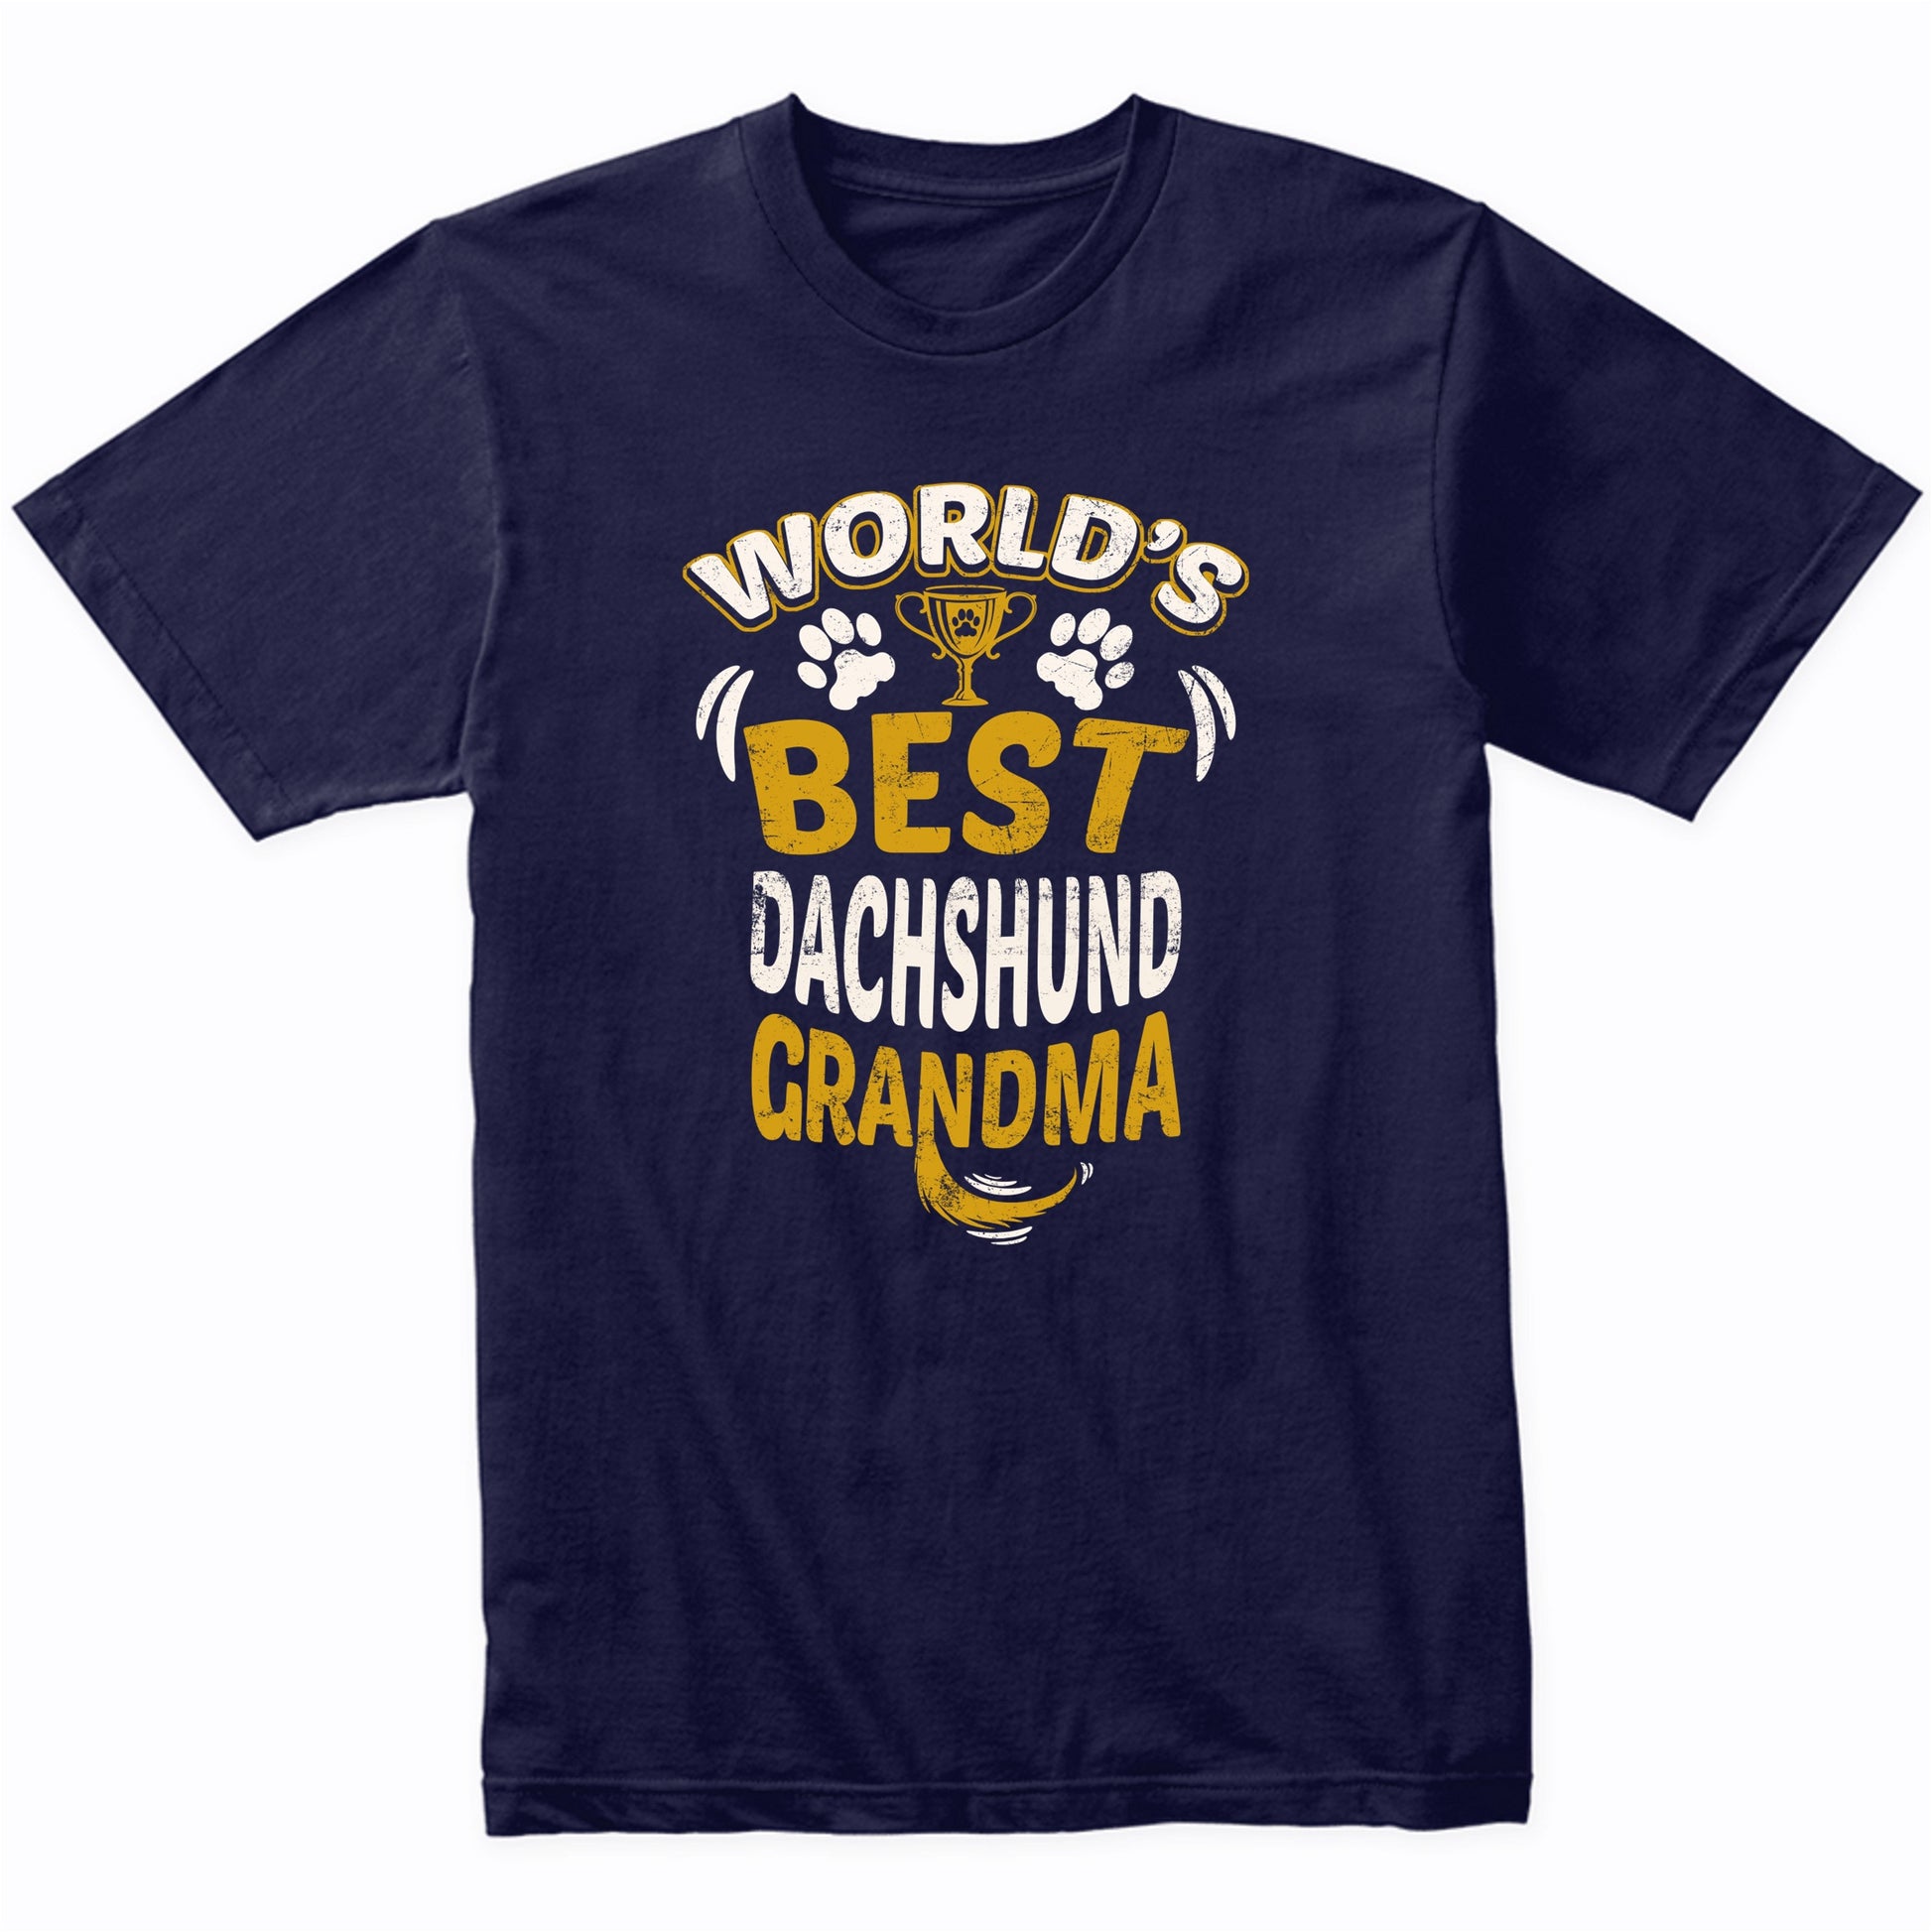 World's Best Dachshund Grandma Graphic T-Shirt